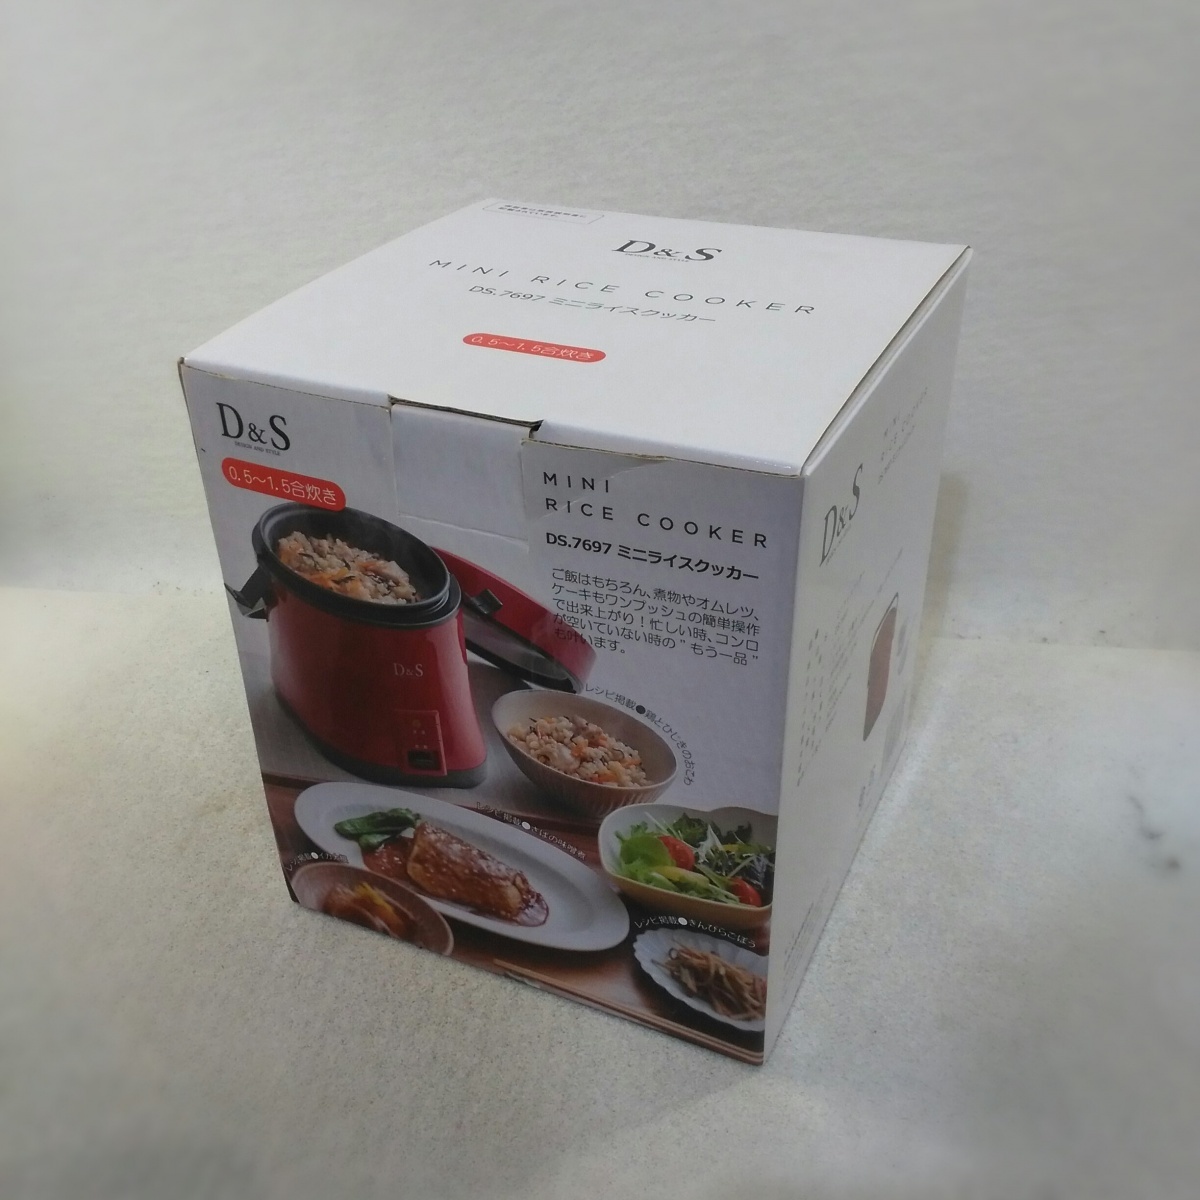 [ не использовался товар ]D&Sti- and es Mini рис кухонная утварь DS.7697 красный ..0.5~1.5... лопатка есть оригинал рецепт есть 